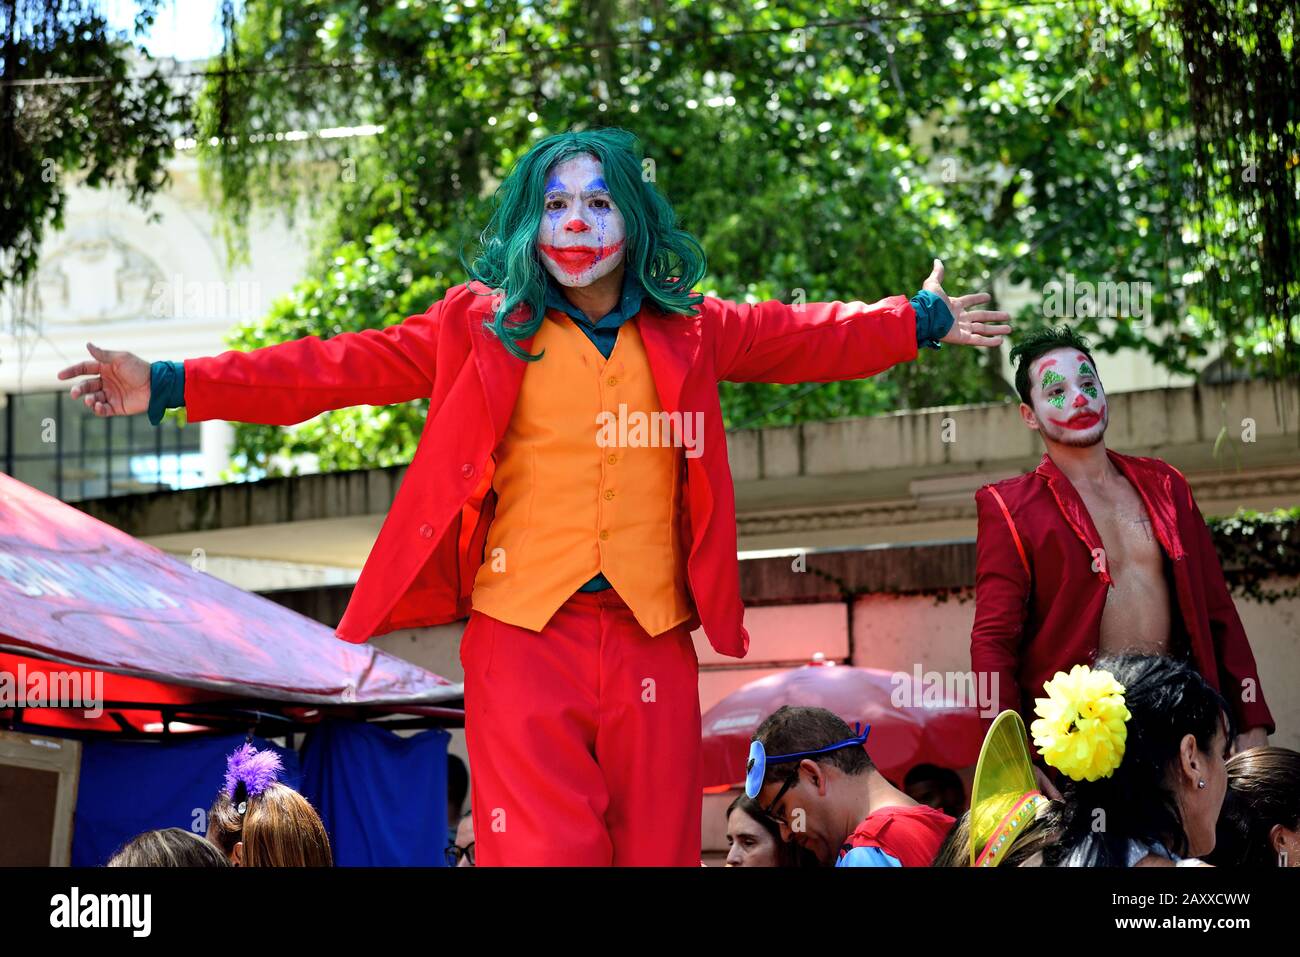 Carnaval, America Latina, Brasile - 8 febbraio 2020: Un rivelatore si pone in costume durante una festa di carnevale di strada che si tiene nella zona sud di Rio de Janeiro. Foto Stock